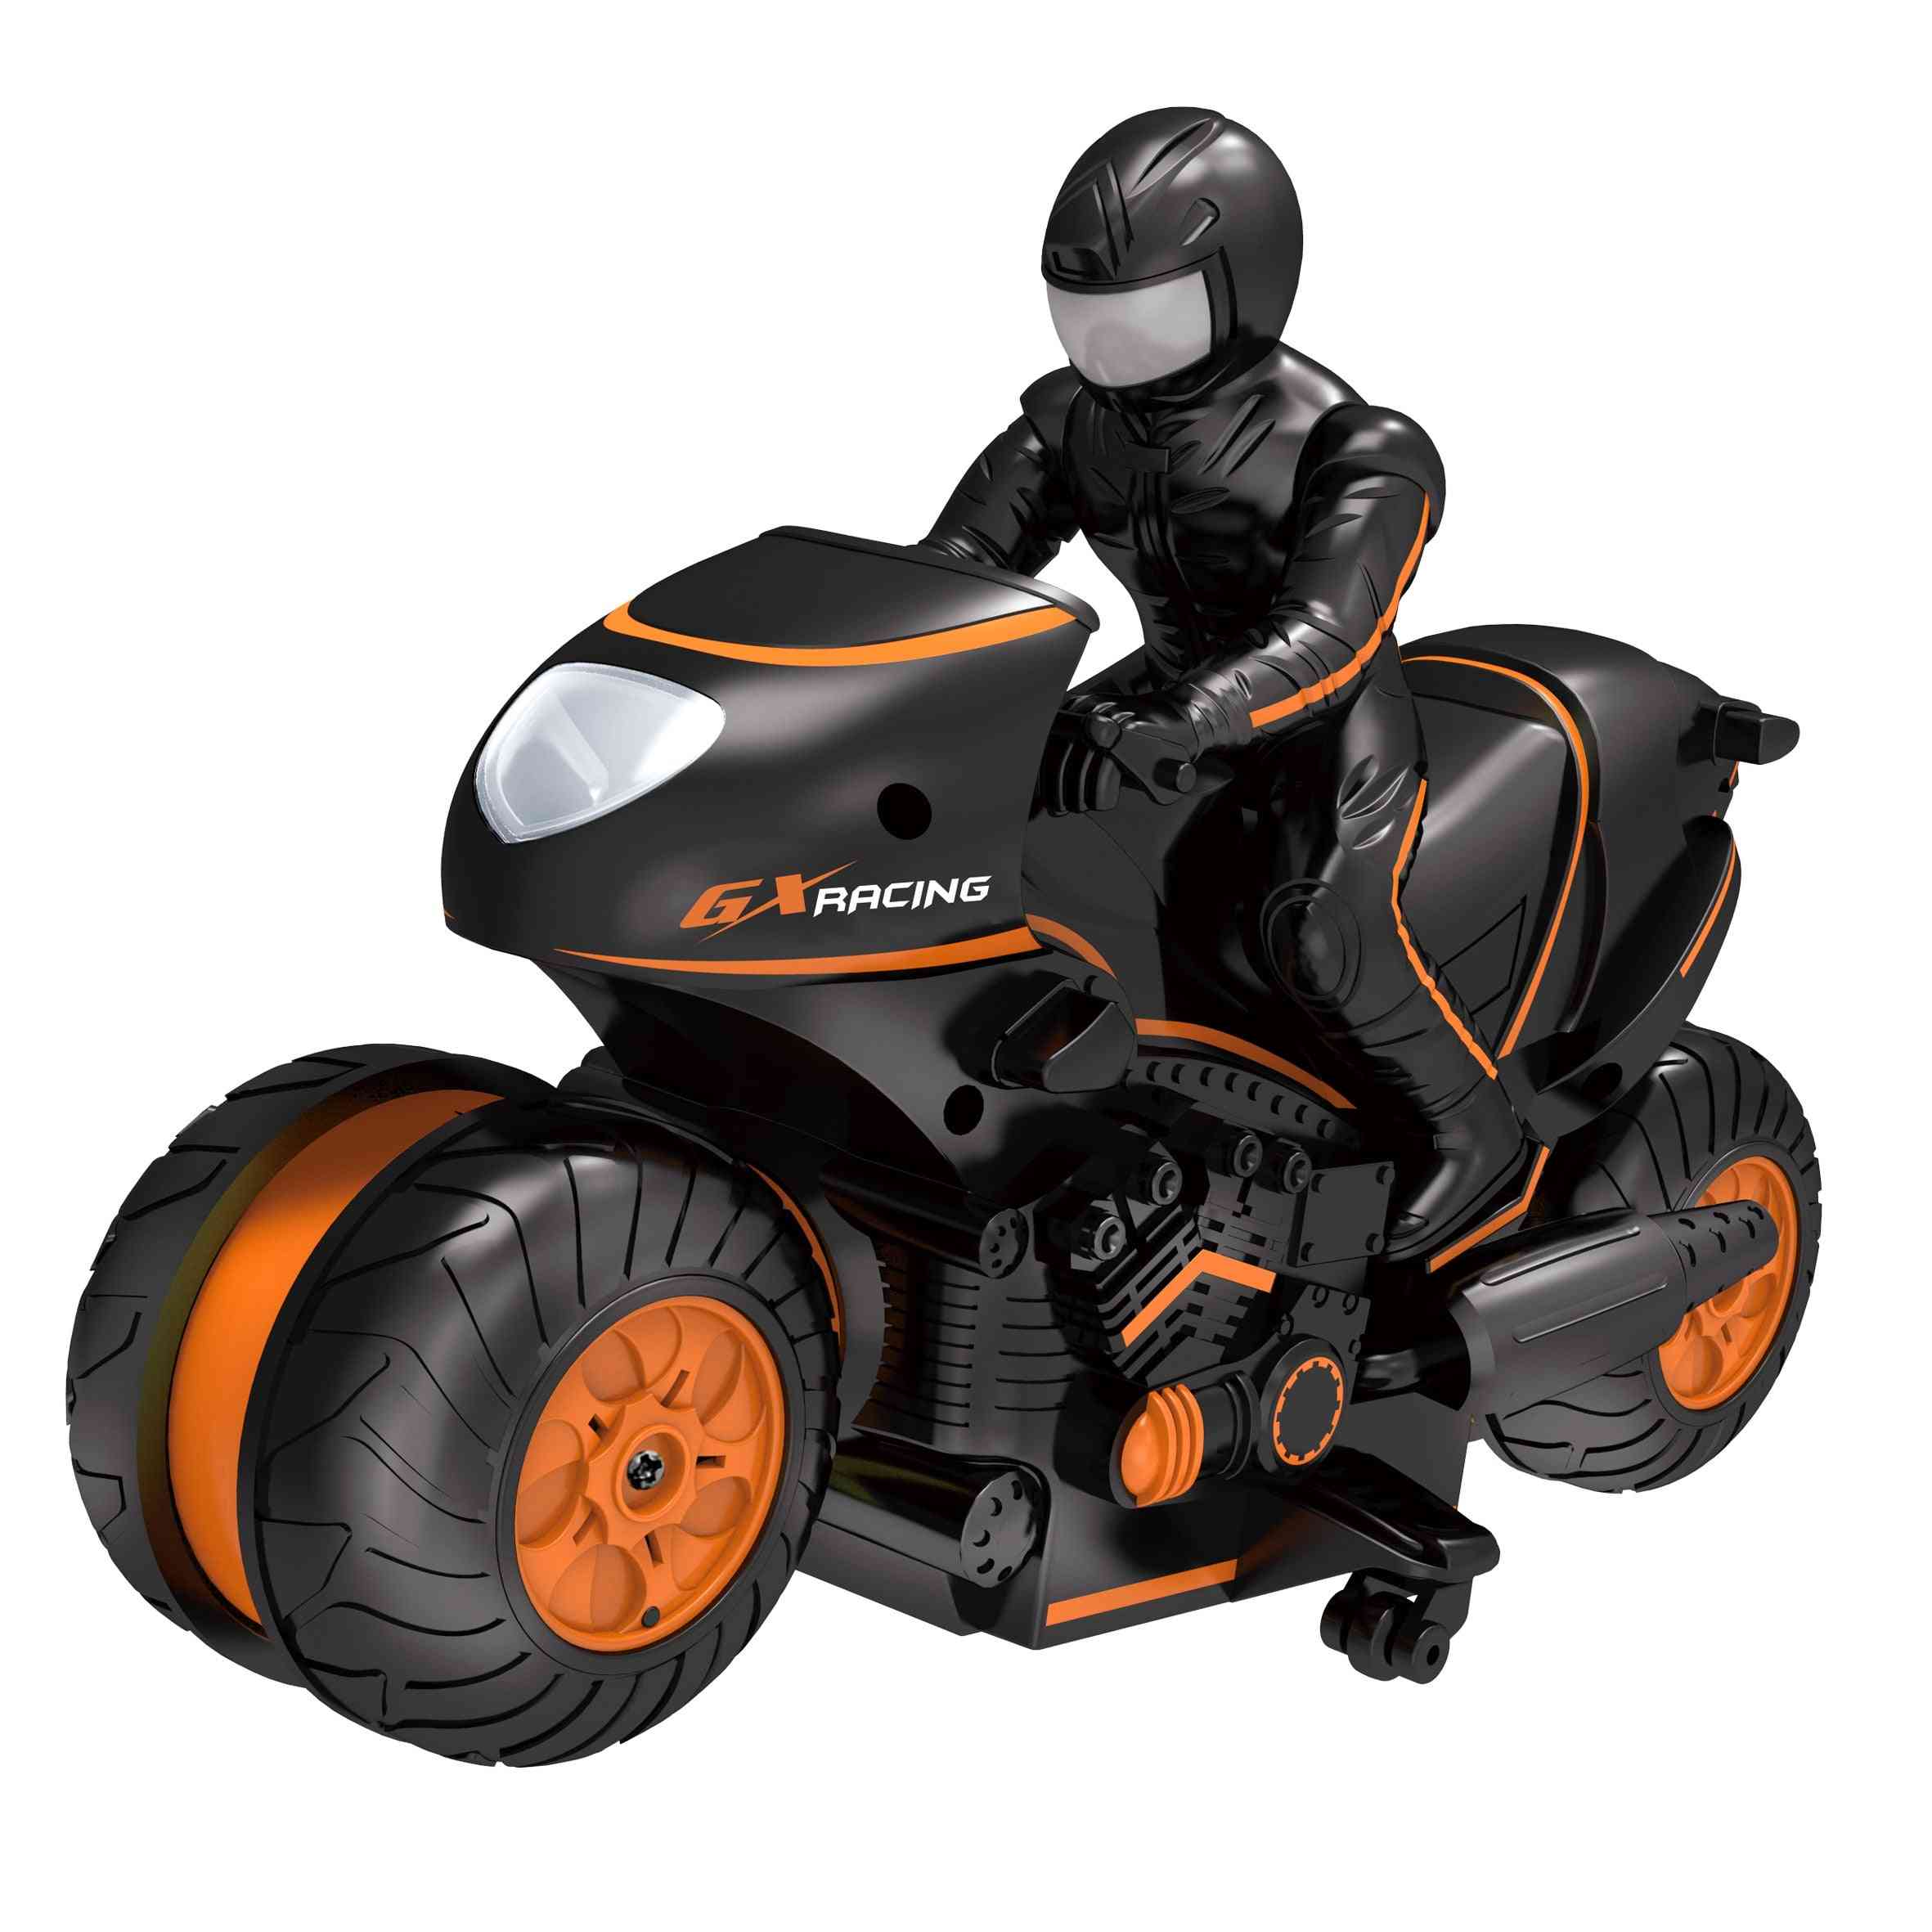 Mini motocykl s ovládáním premote - vysoká rychlost 2,4 GHz pro